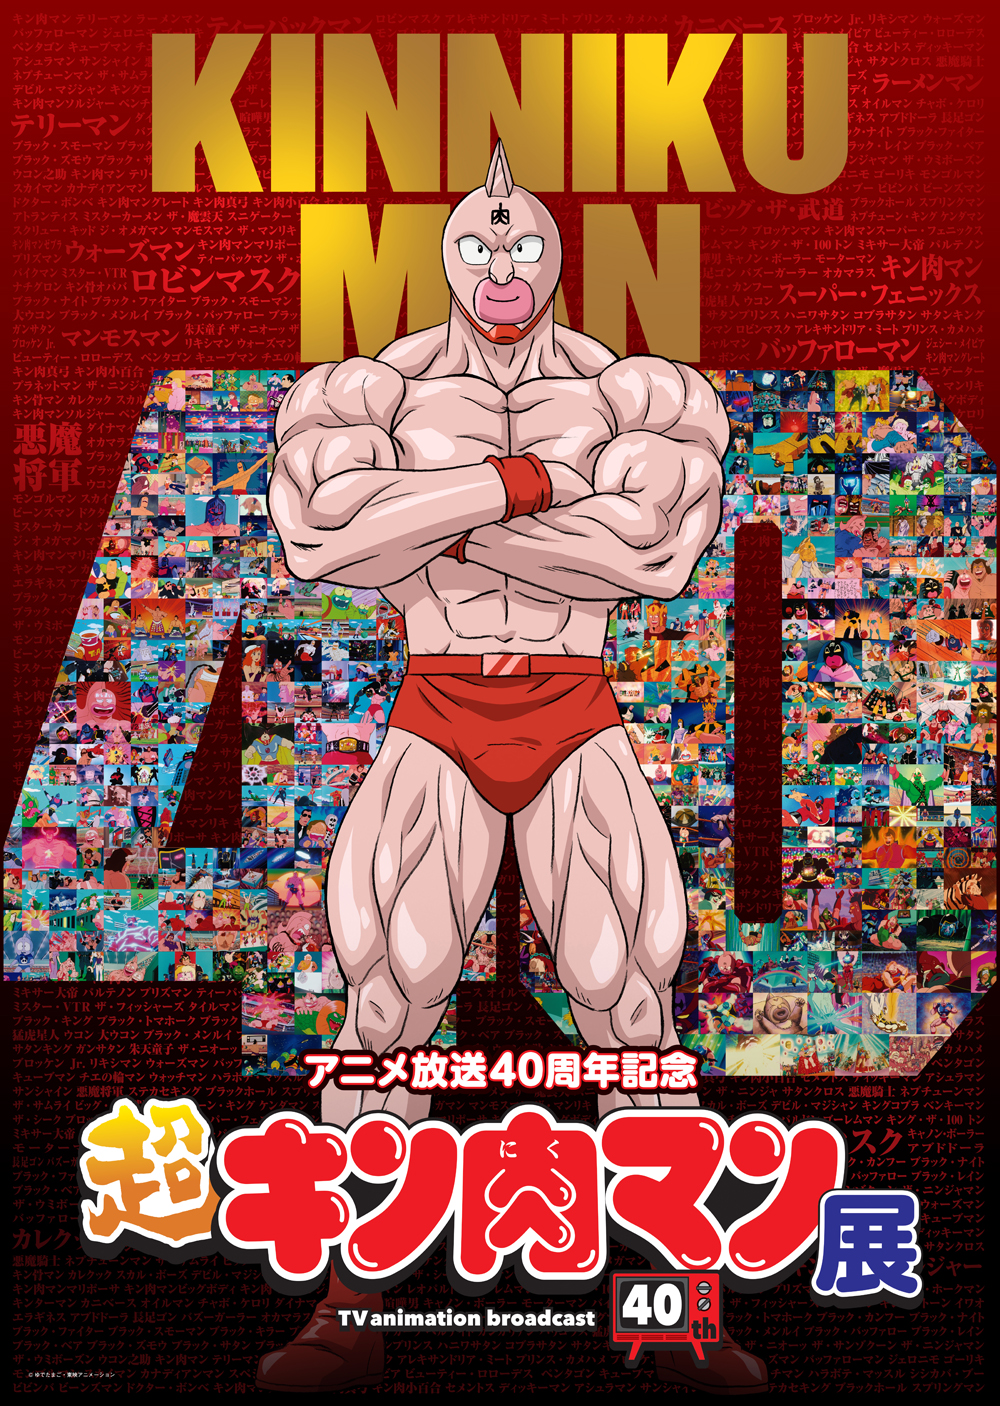 アニメ放送40周年記念「超キン肉マン展」開催決定＆入場券販売開始